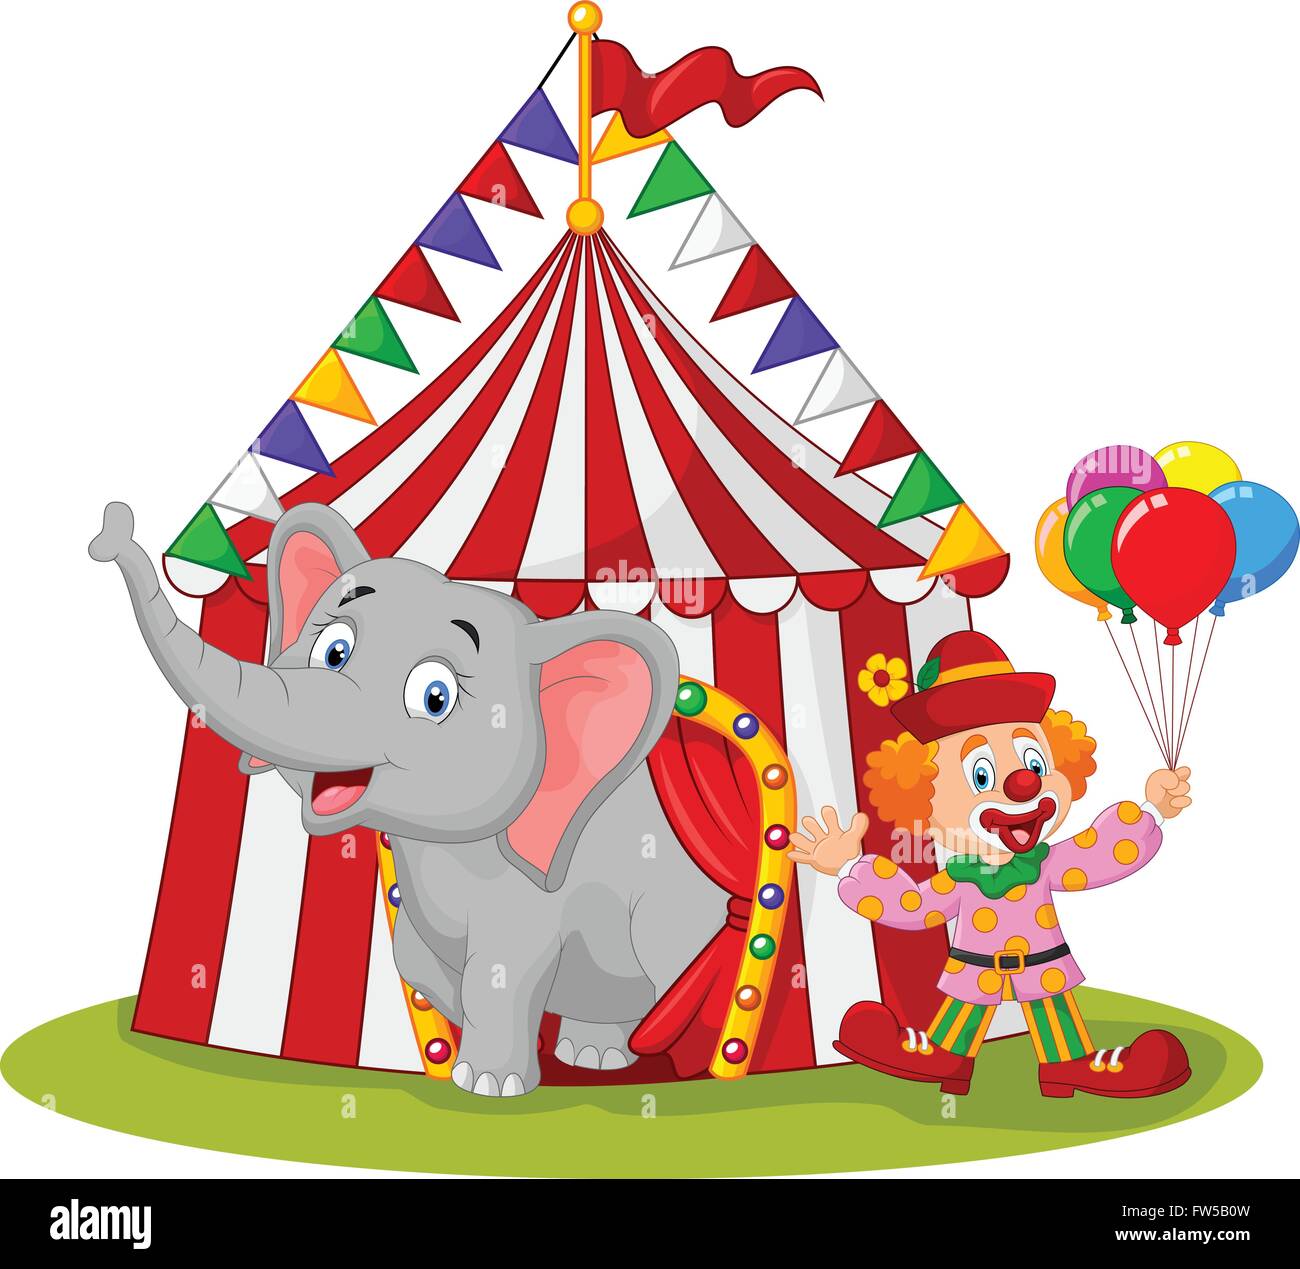 Cute Cartoon elephant et clown avec tente de cirque Illustration de Vecteur